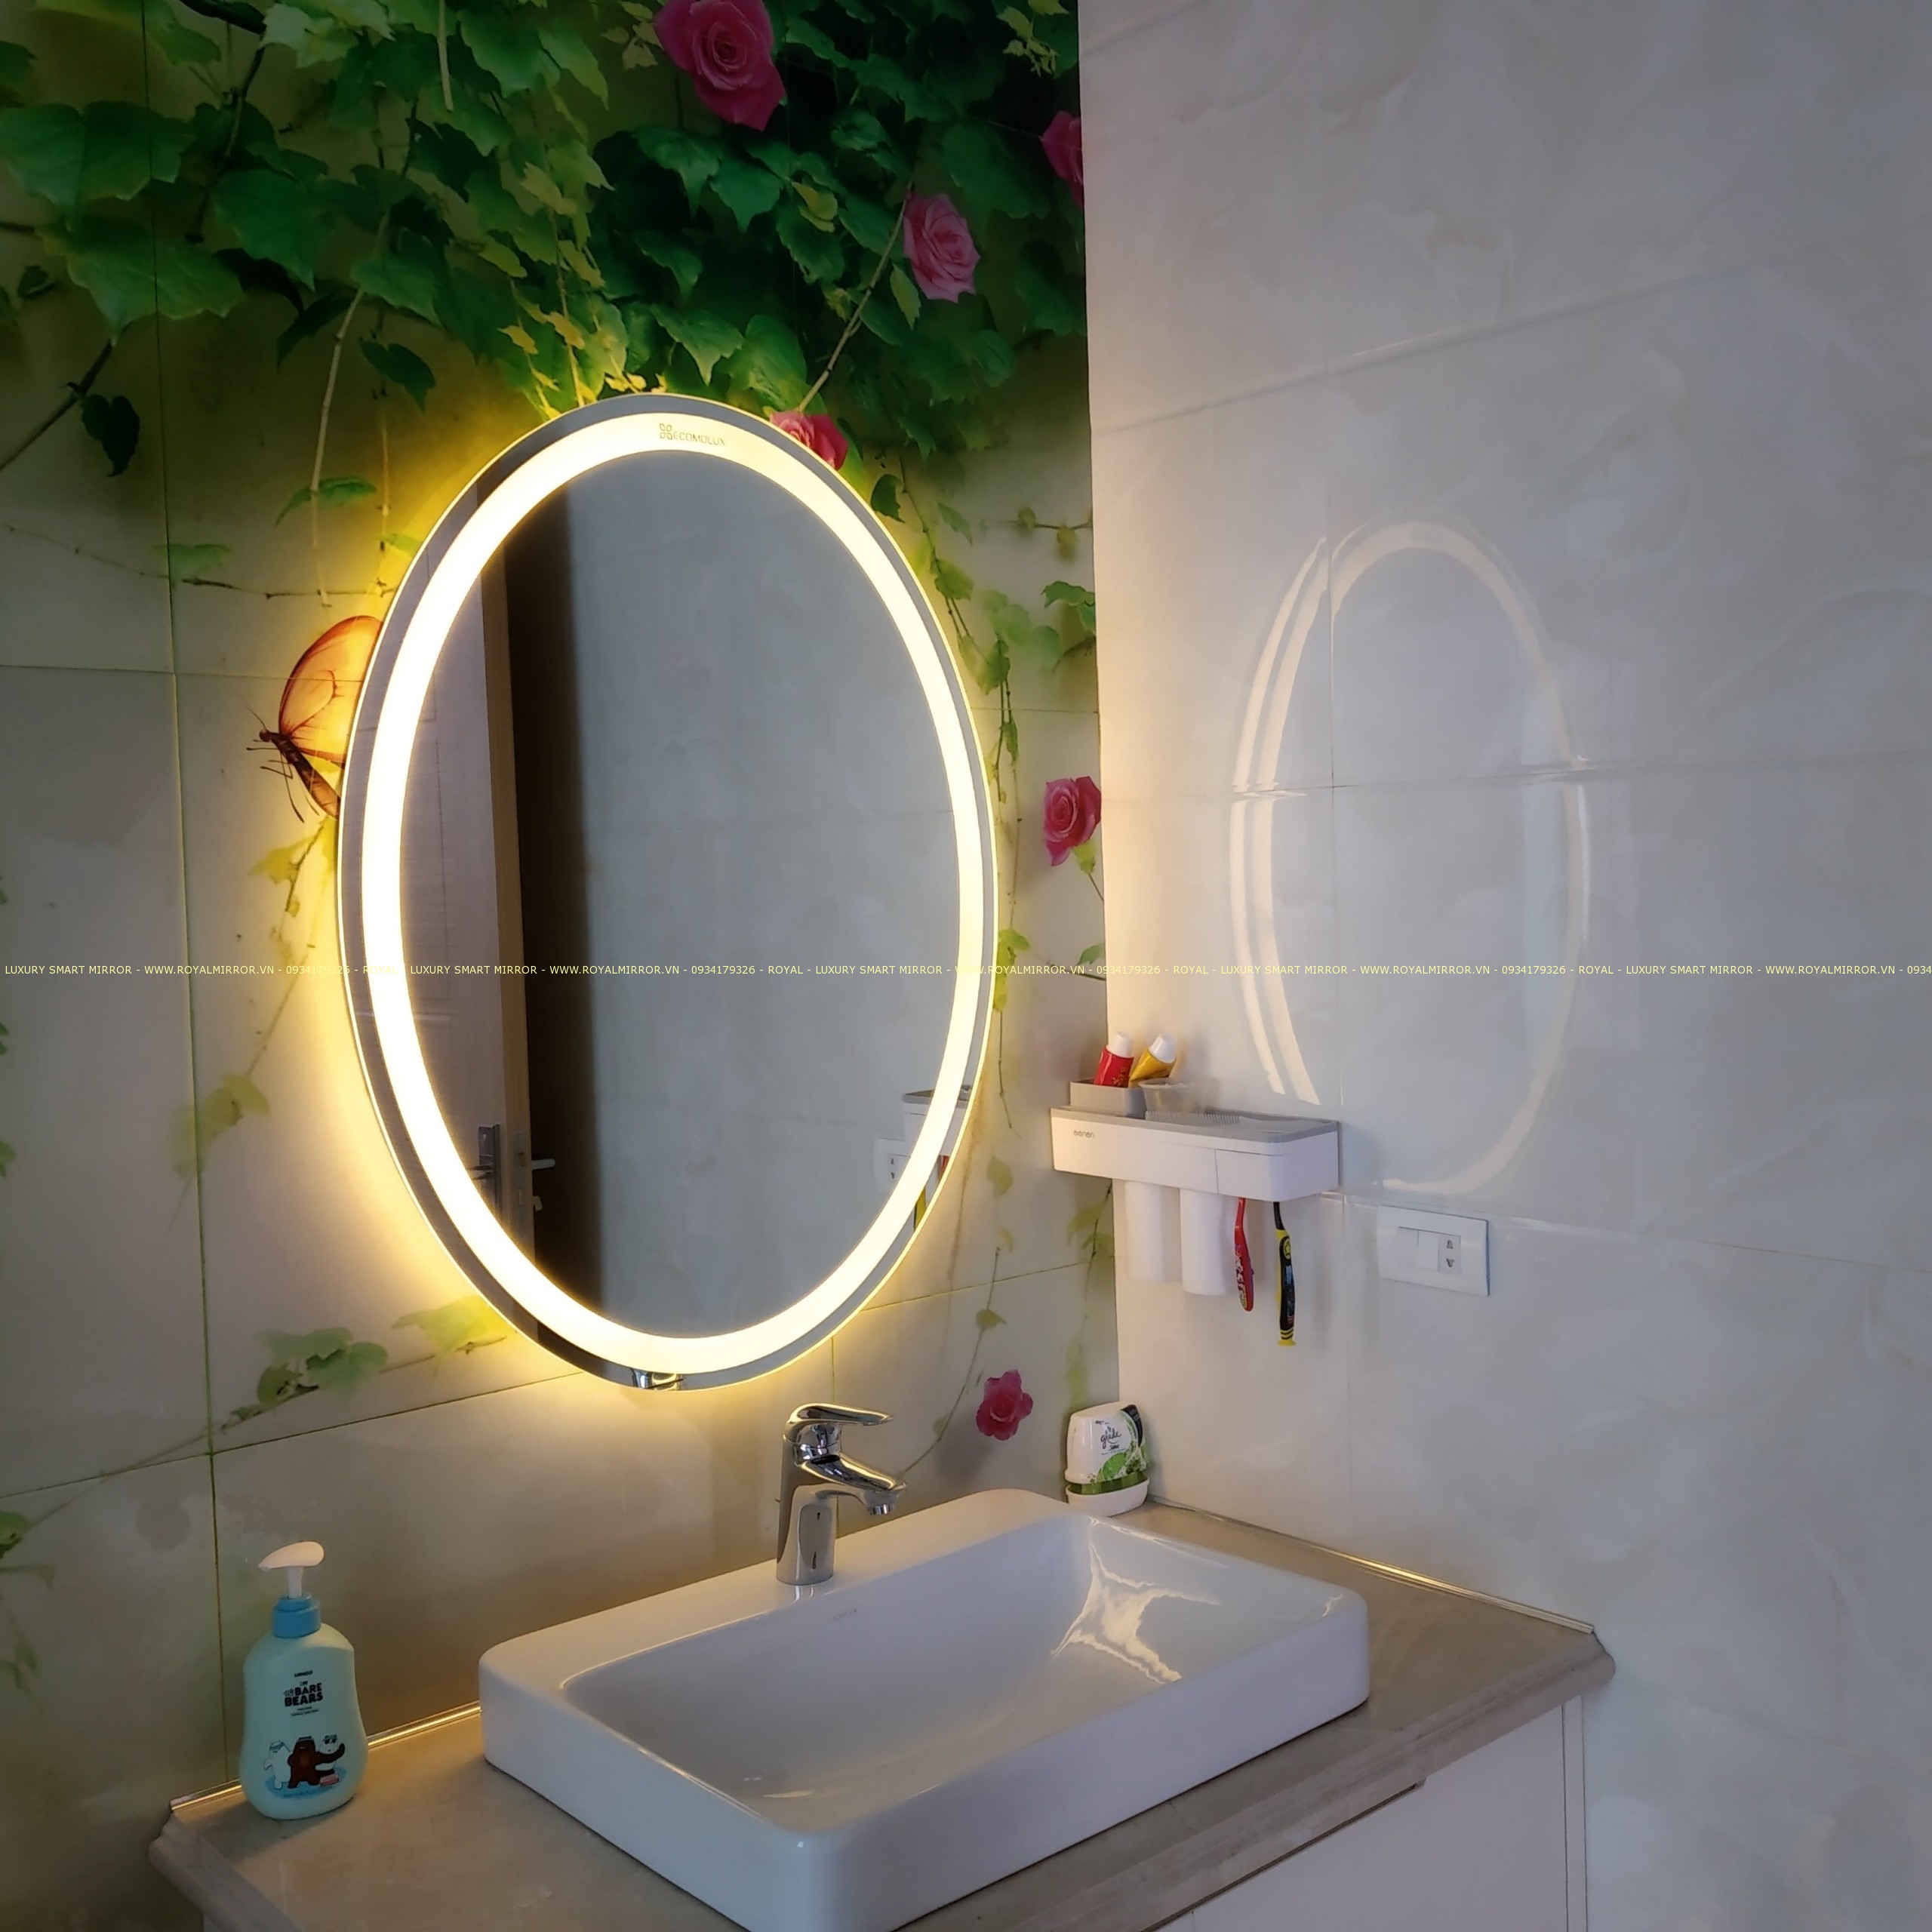 Hiệu ứng đèn LED giúp tăng cường ánh sáng và làm sáng bừng không gian phòng tắm. Sản phẩm này đem lại độ sang trọng và hiện đại cho không gian nội thất của bạn.